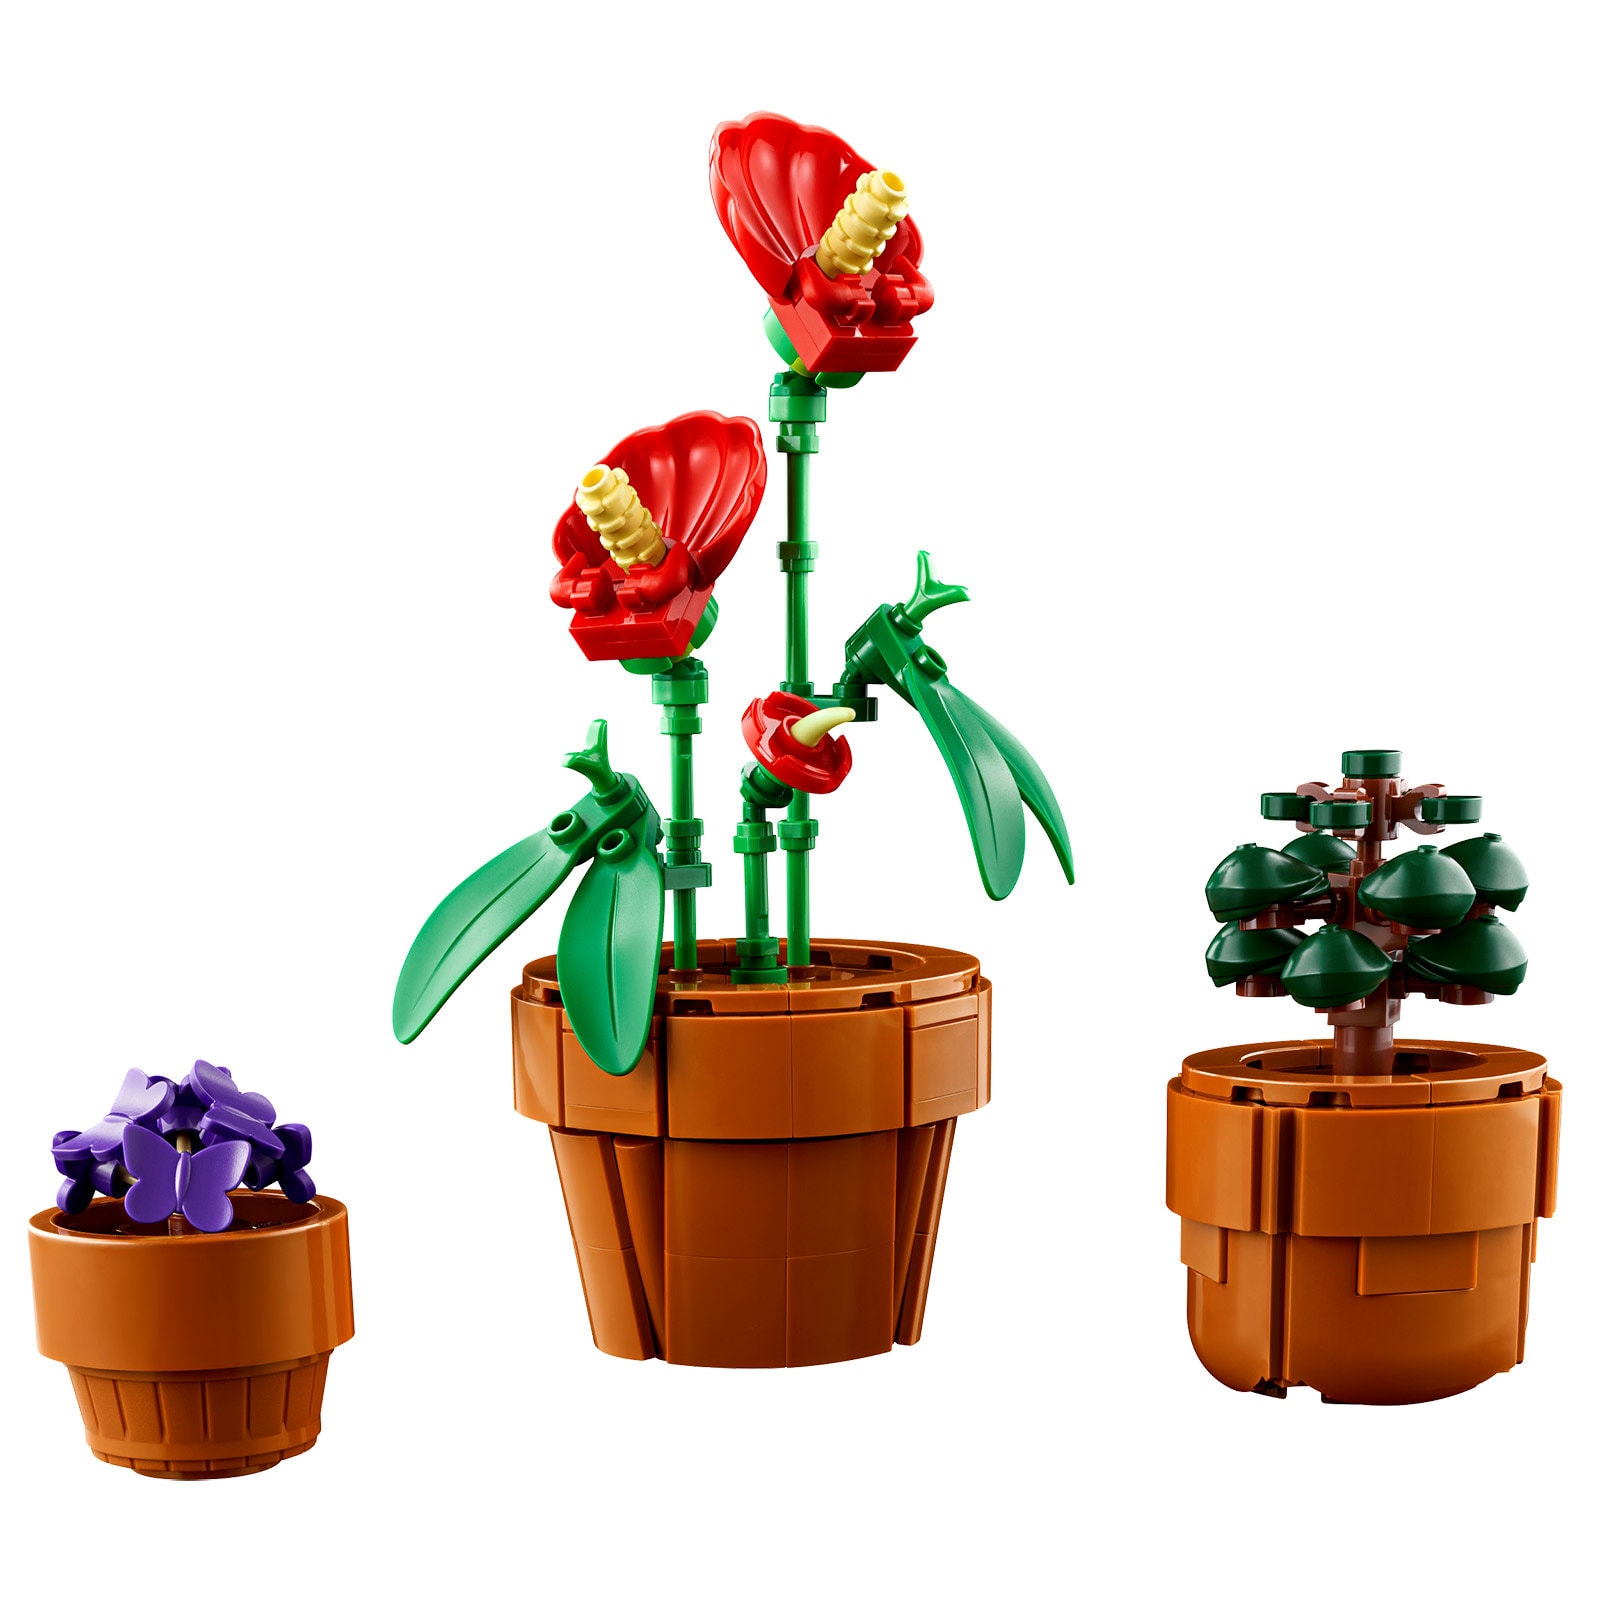 Plus besoin d'arroser vos plantes avec ce set LEGO botanique en promo 